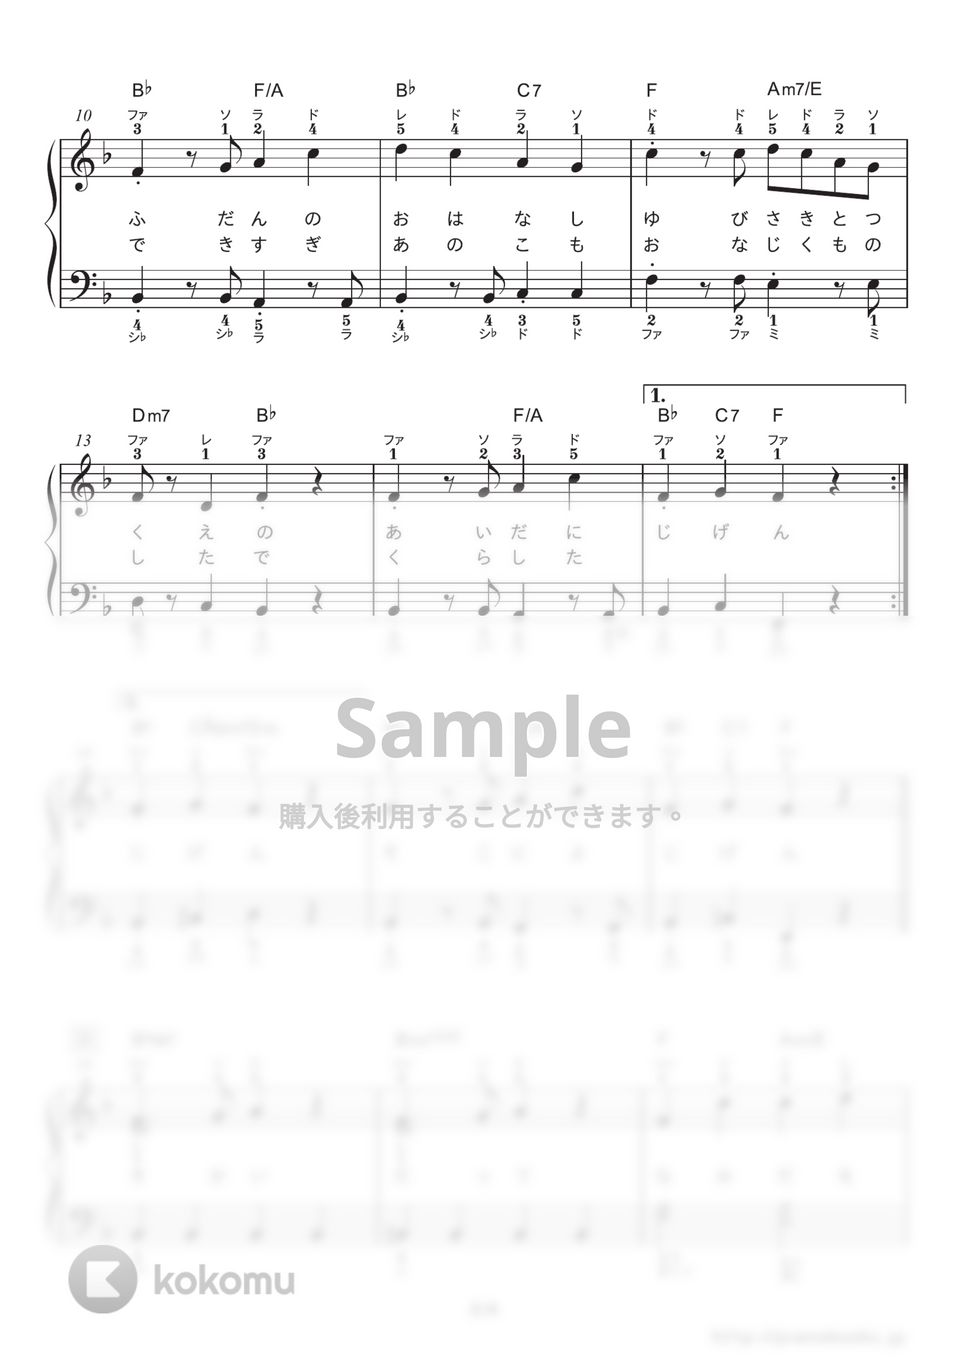 星野源 - ドラえもん (映画『ドラえもん のび太の宝島』主題歌) by ピアノの本棚